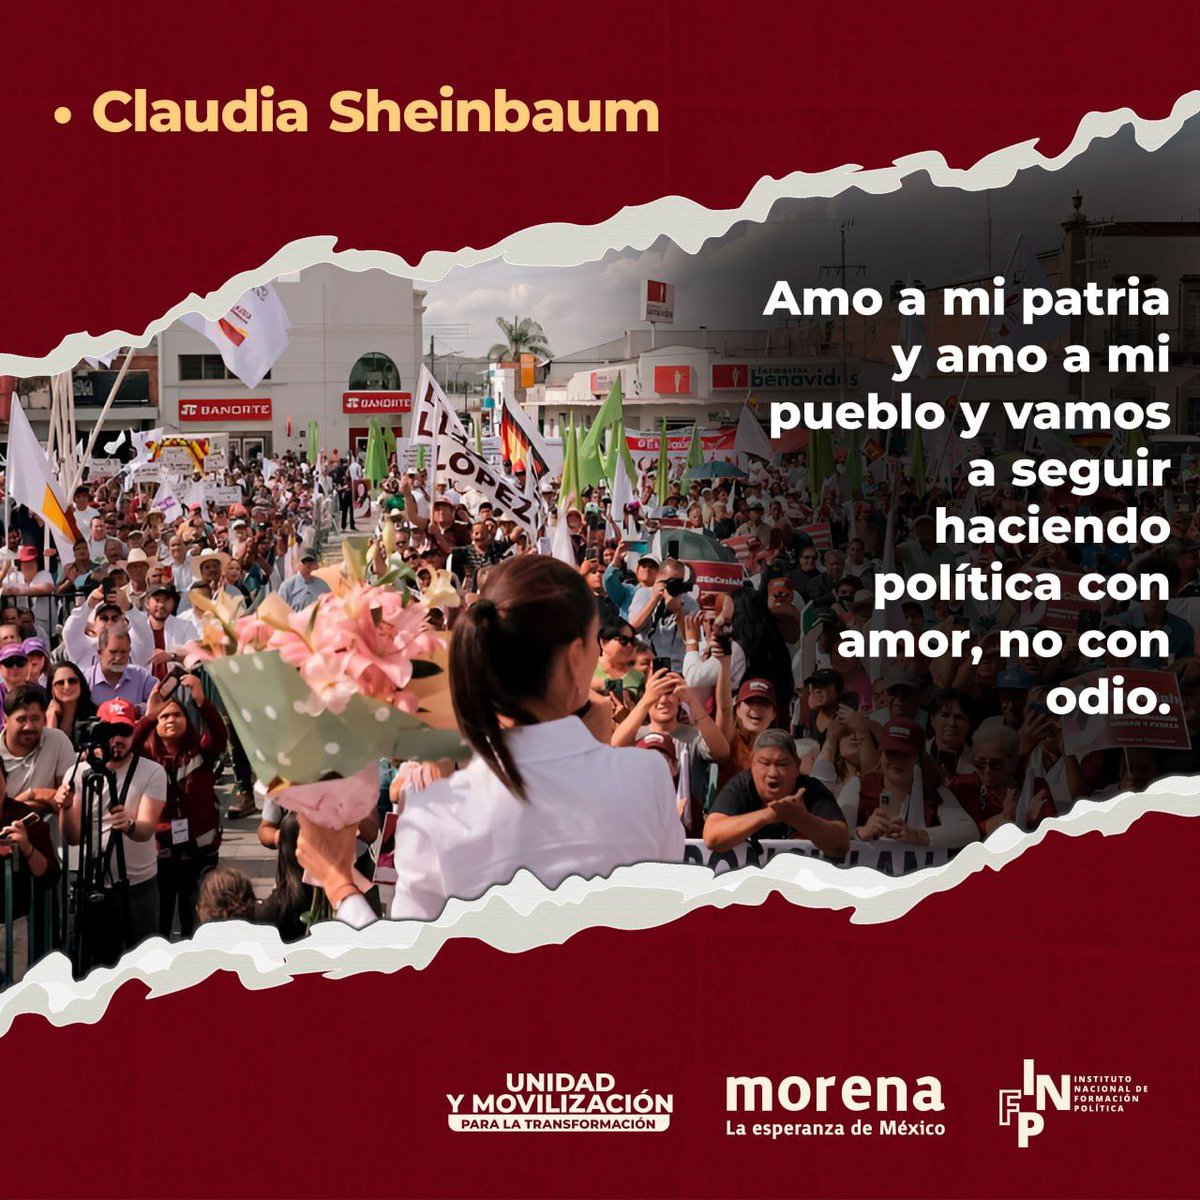 Para @Claudiashein lo que hace diferente a nuestro movimiento es el amor a la patria y al pueblo. Seguiremos construyendo el segundo piso de la cuarta transformación anteponiendo el bienestar de las mayorías. ¡Es tiempo de mujeres de izquierda! 💜💚#YoConClaudia